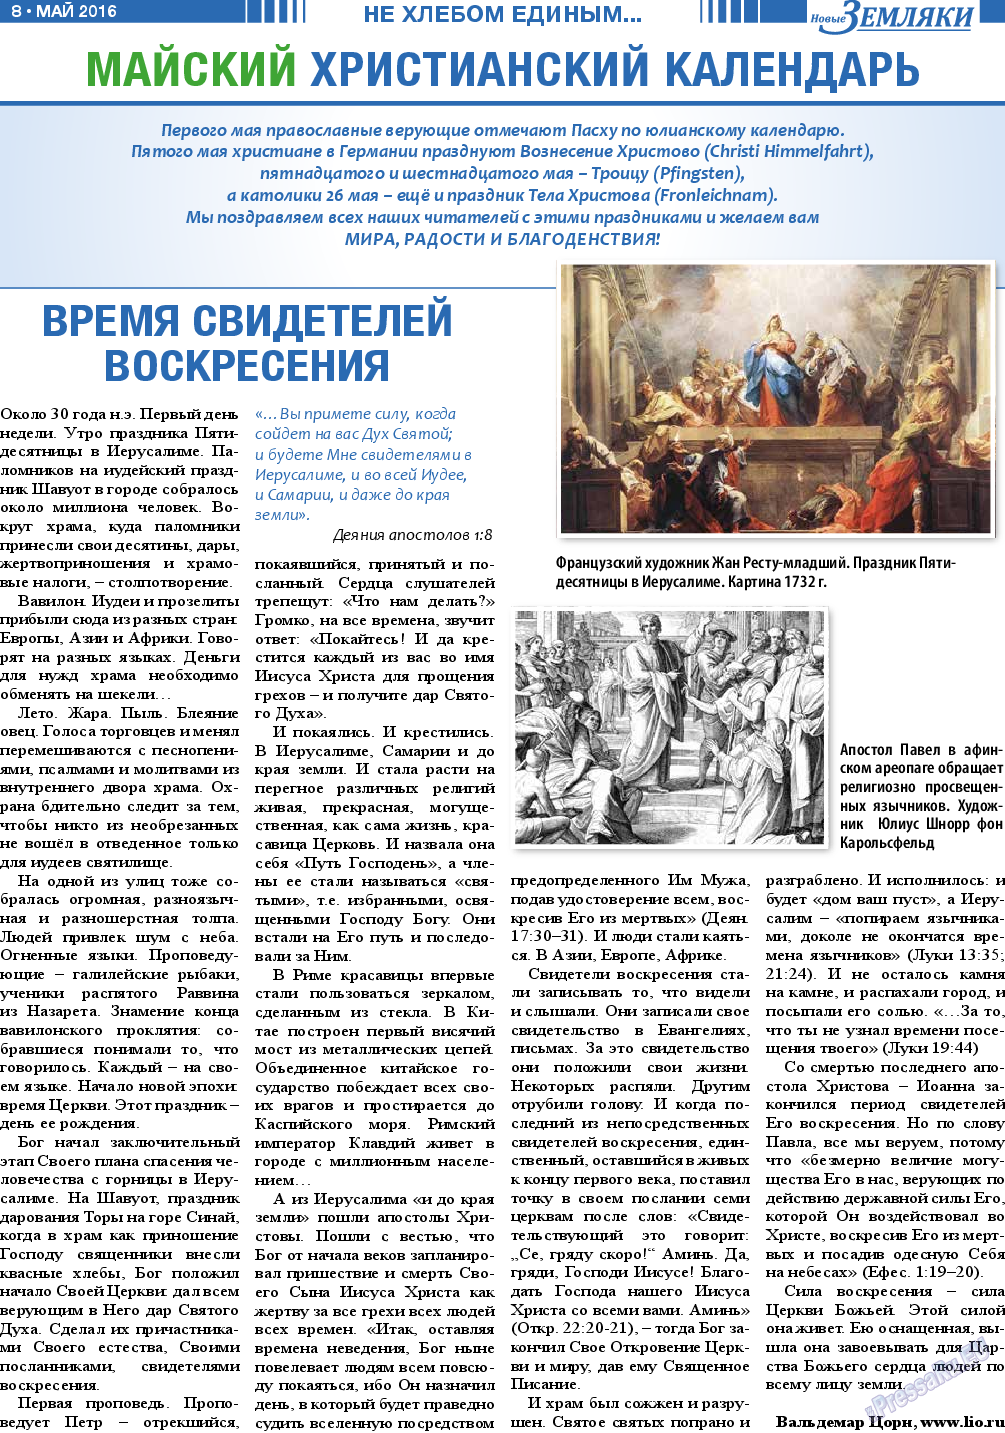 Новые Земляки, газета. 2016 №5 стр.8